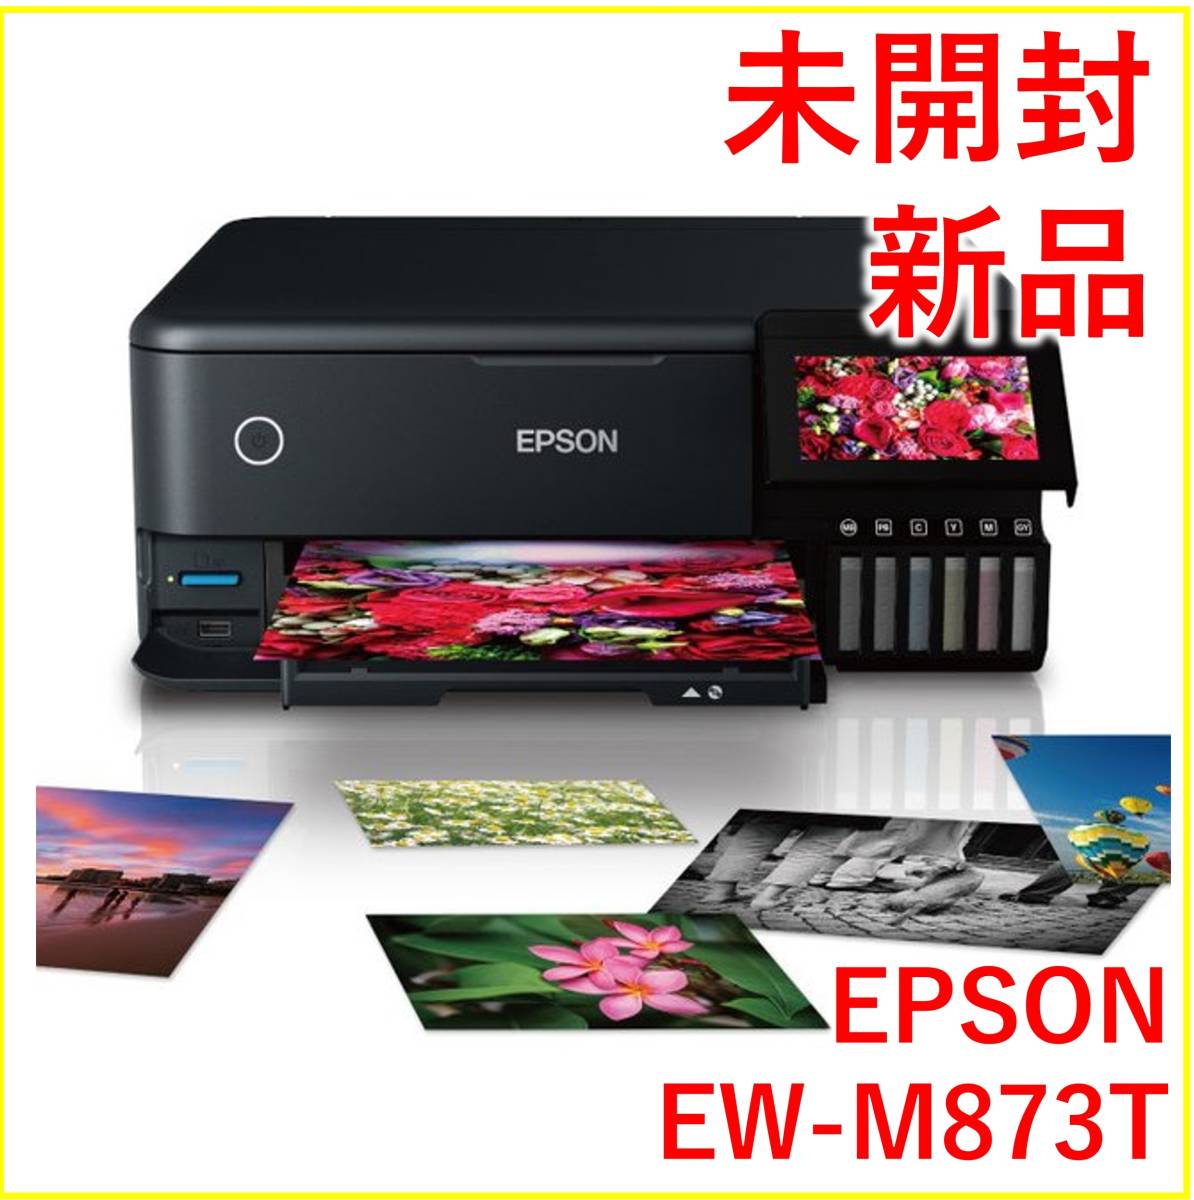 新品 未開封 【在庫処分】 EPSON SALE 86%OFF エプソン インクジェット複合機 EW-M873T